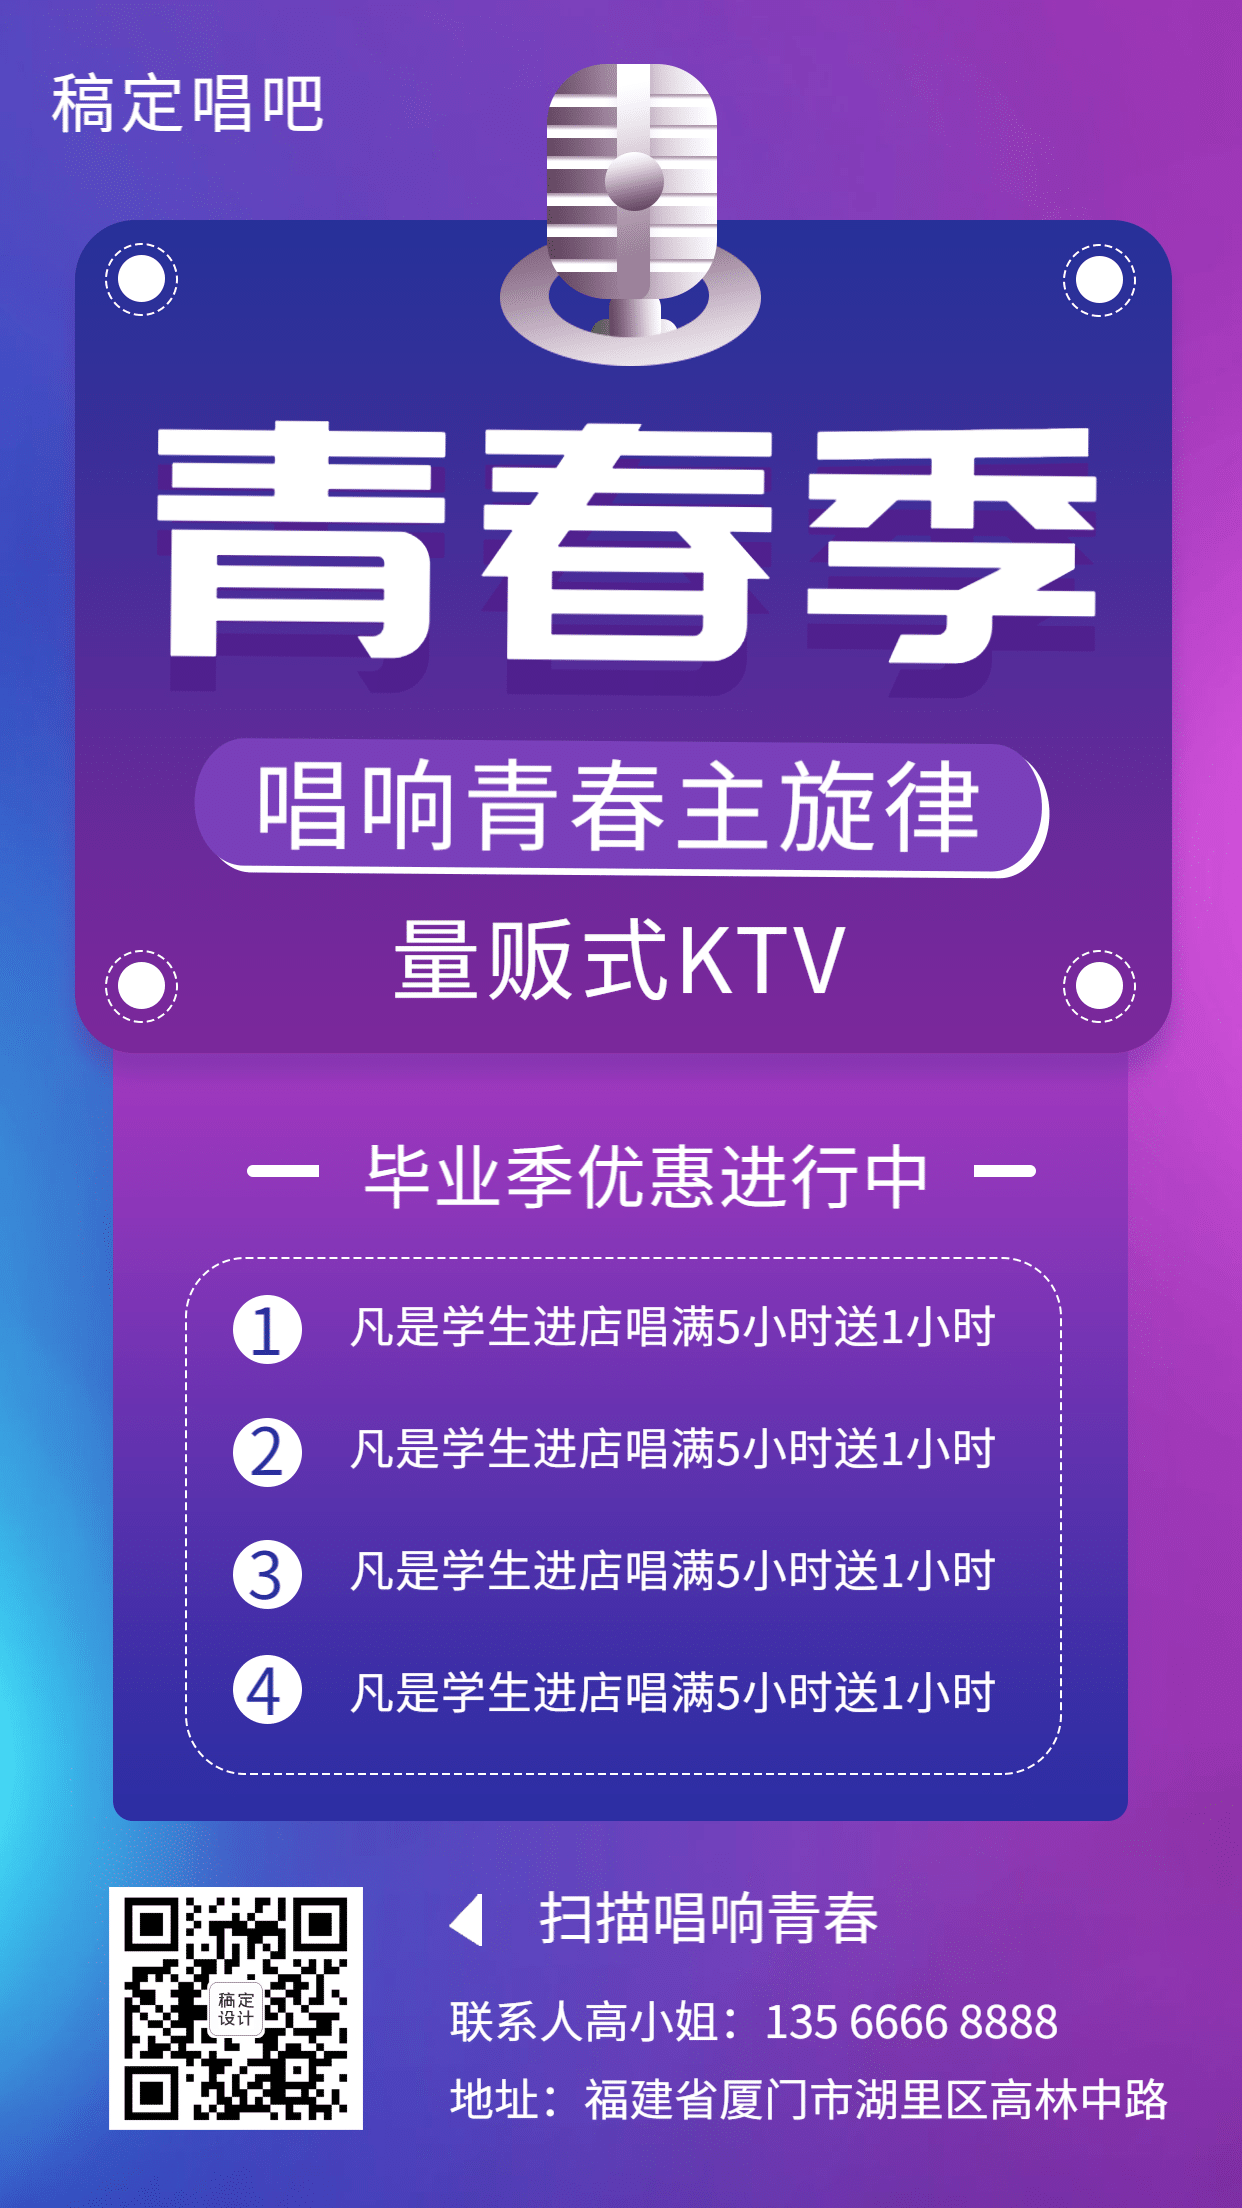 KTV酷炫暑期促销手机海报